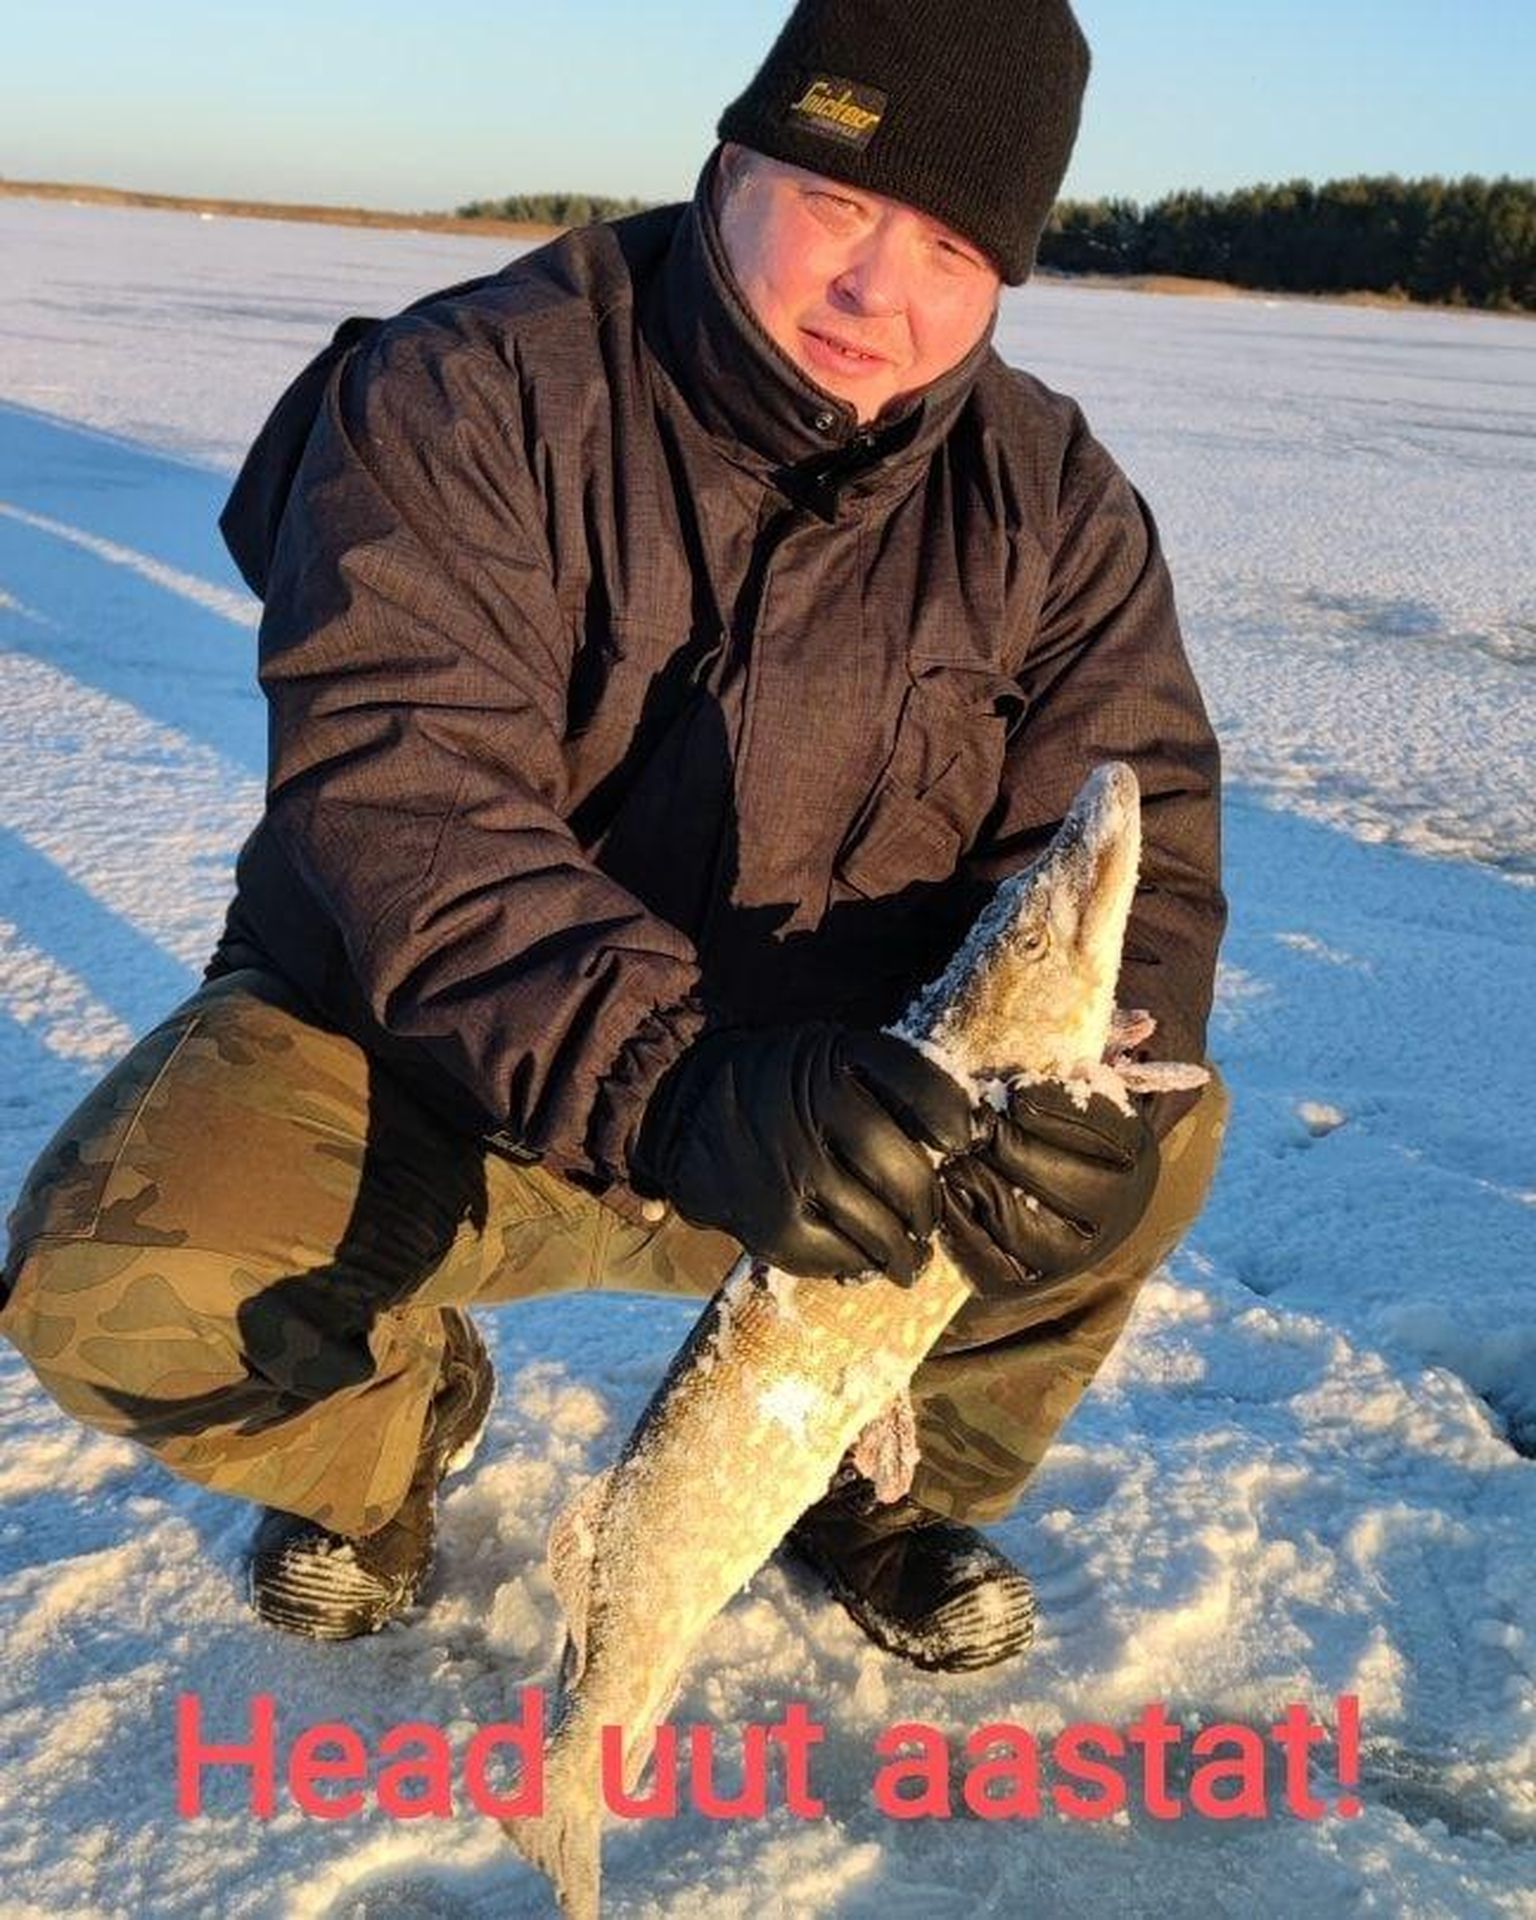 Keskkonnaminister Erki Savisaar ajas surnud kalaga poseerides marru keskkonnaaktivistid.